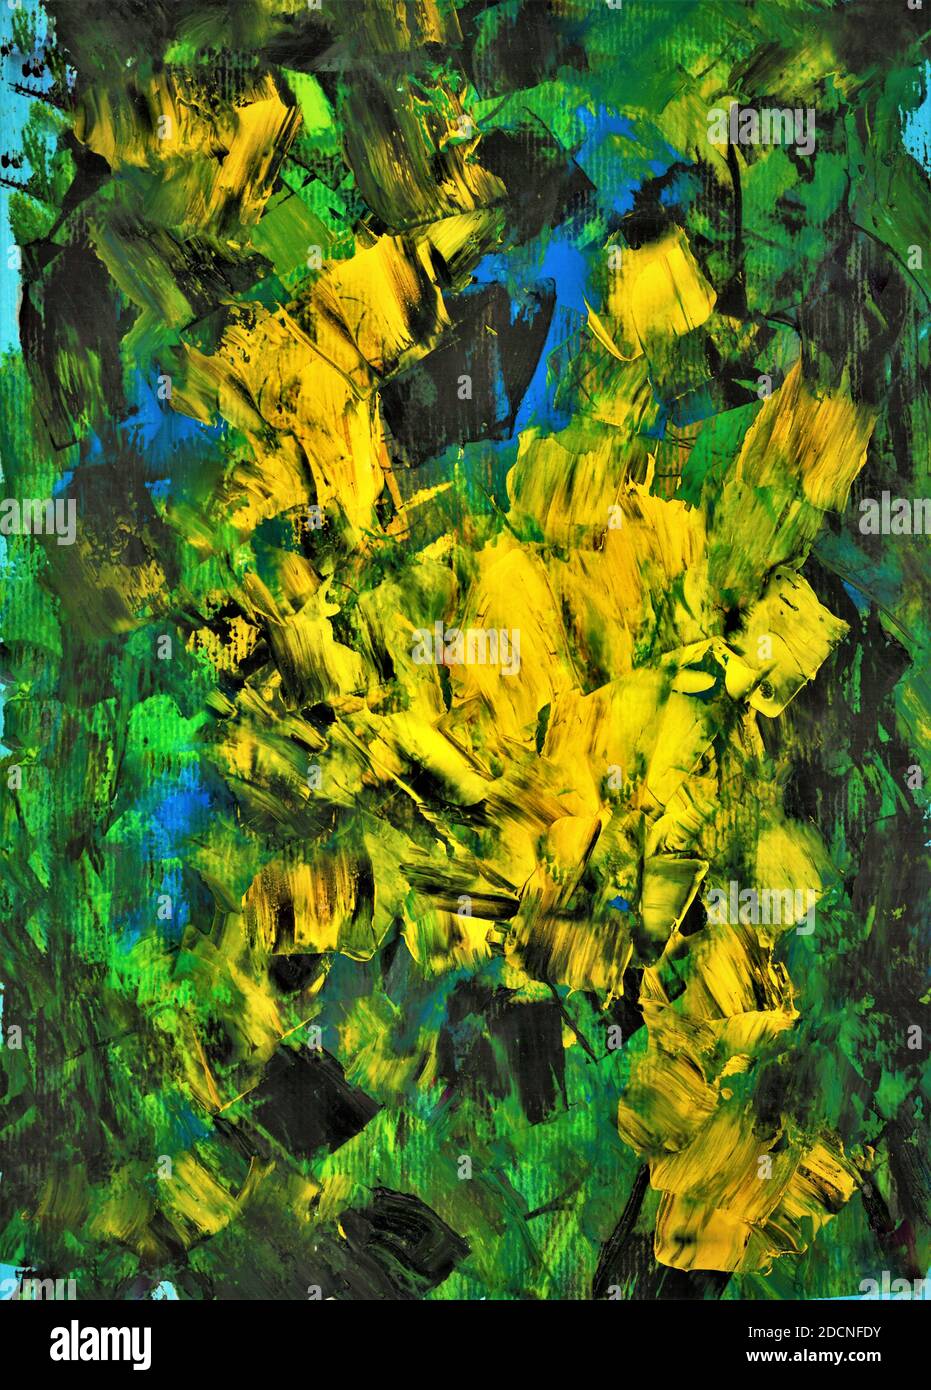 Peinture abstraite à l'huile en bleu, jaune et vert. Peint par le photographe. Banque D'Images